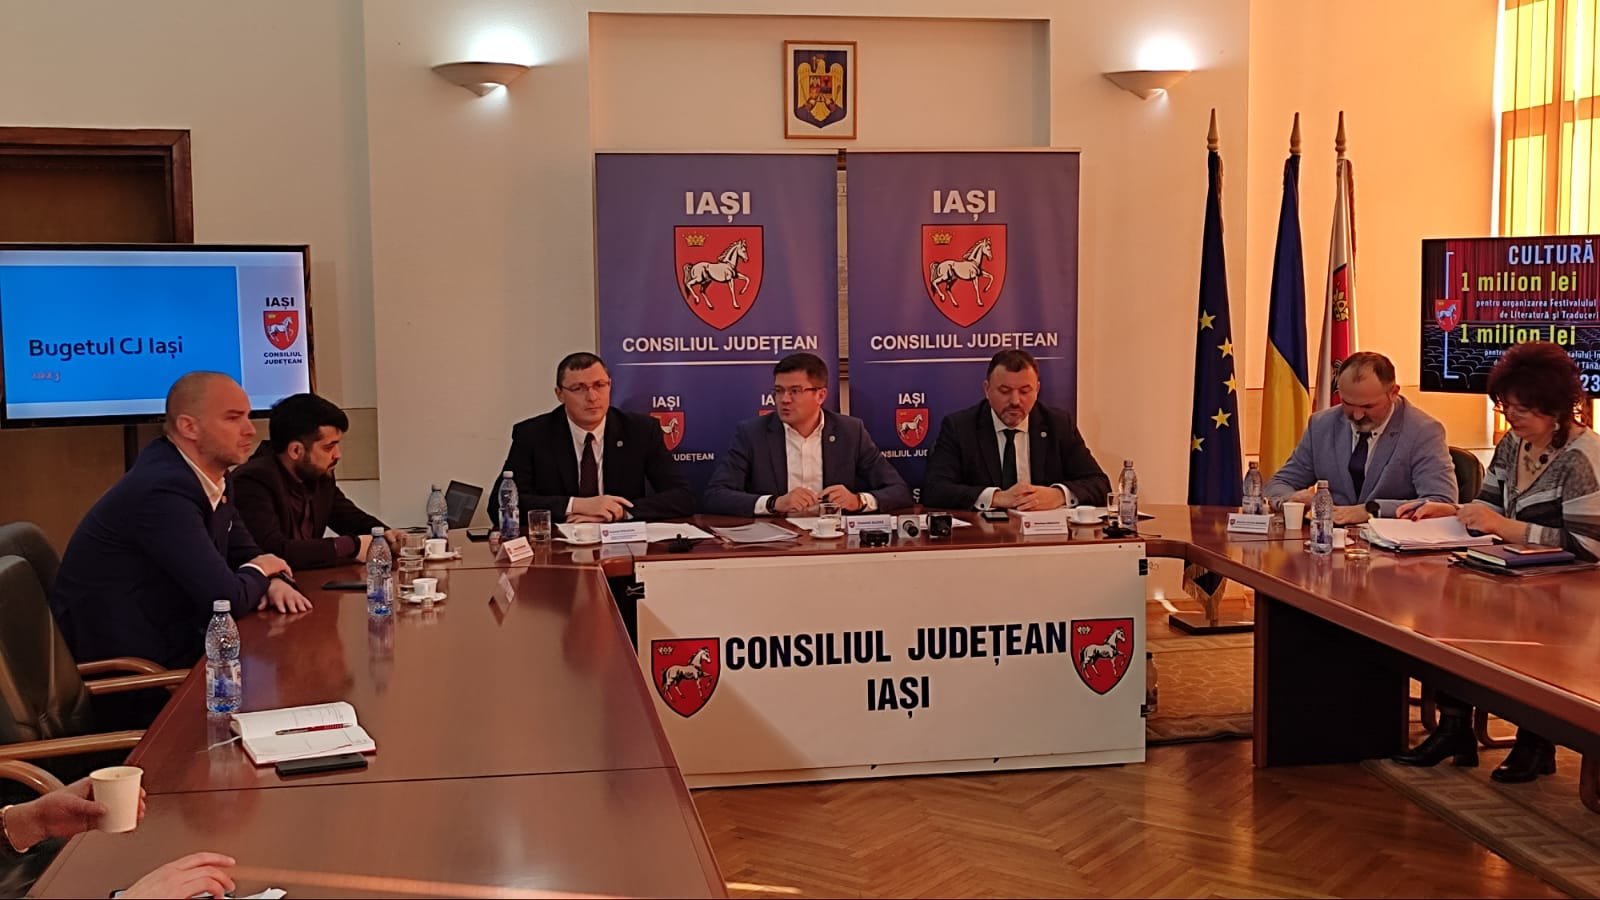  Bugetul județului Iași, cât costă timpul pierdut: s-au dublat costurile pentru Axa rutieră Iași-Suceava și pentru restaurarea Filarmonicii